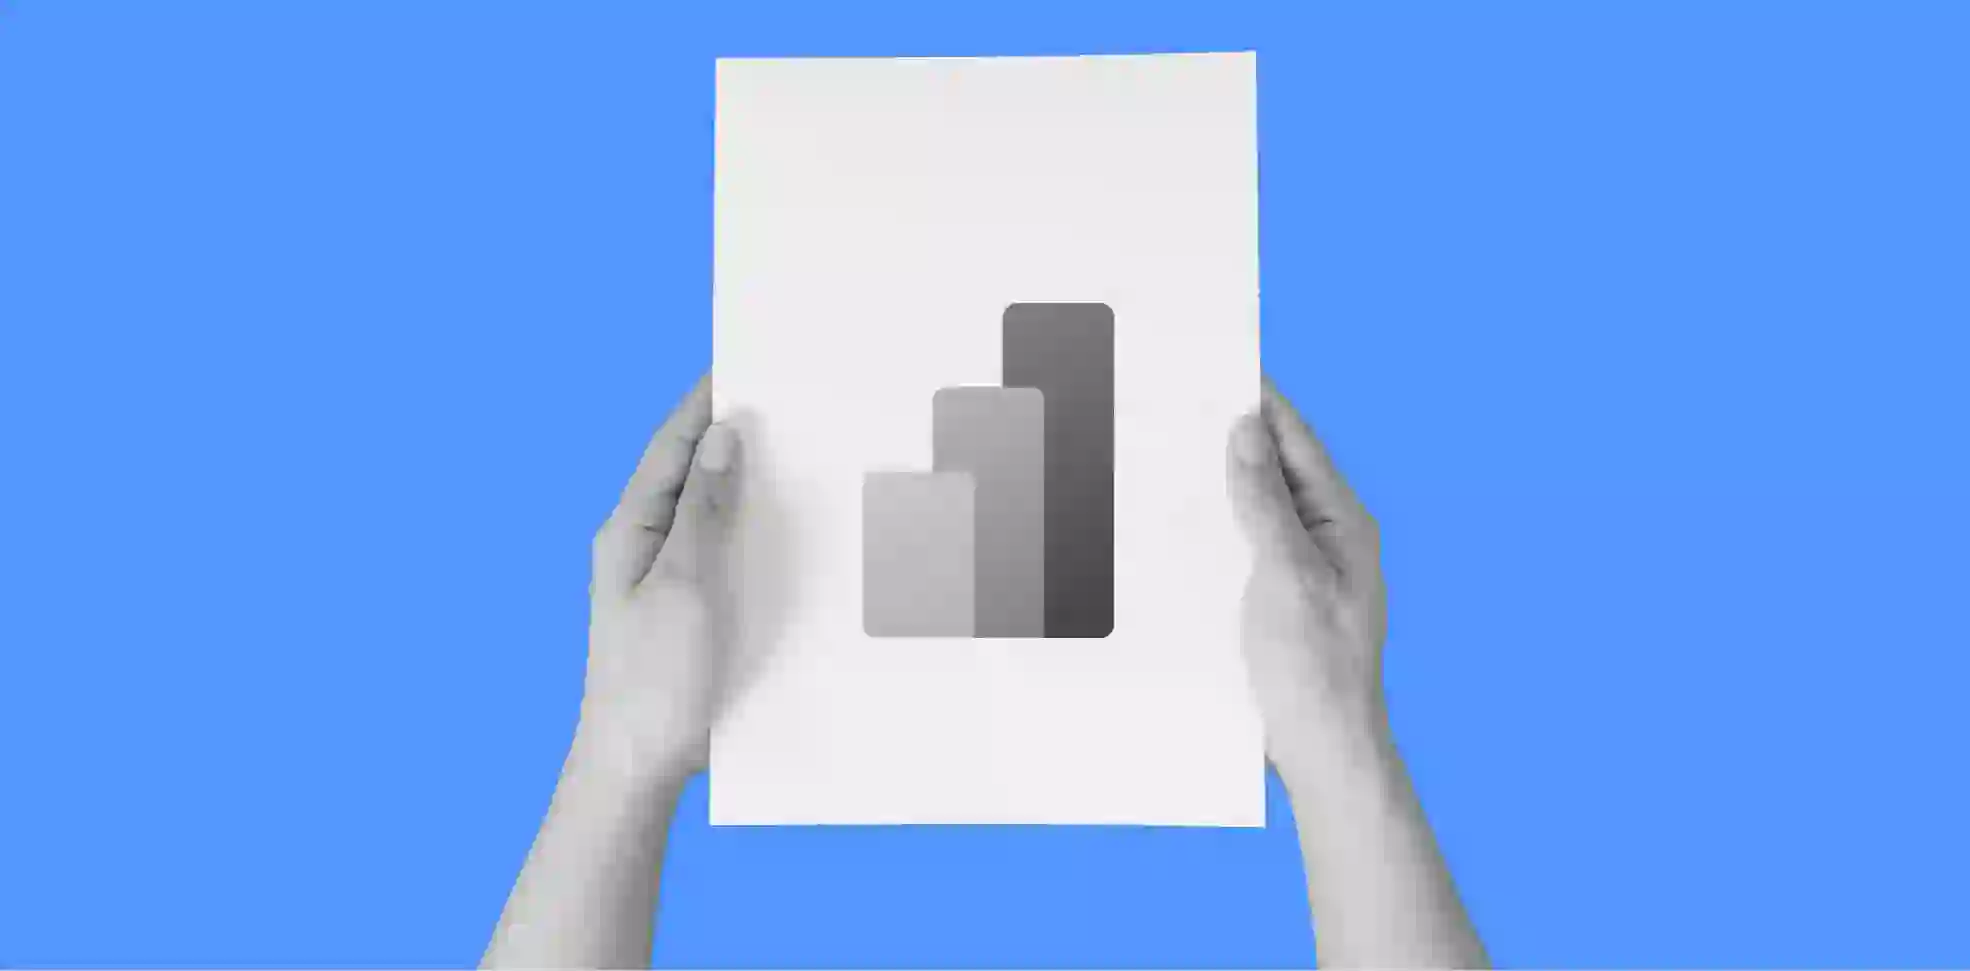 manos sosteniendo una hoja de papel con un gráfico de barras sobre un fondo azul